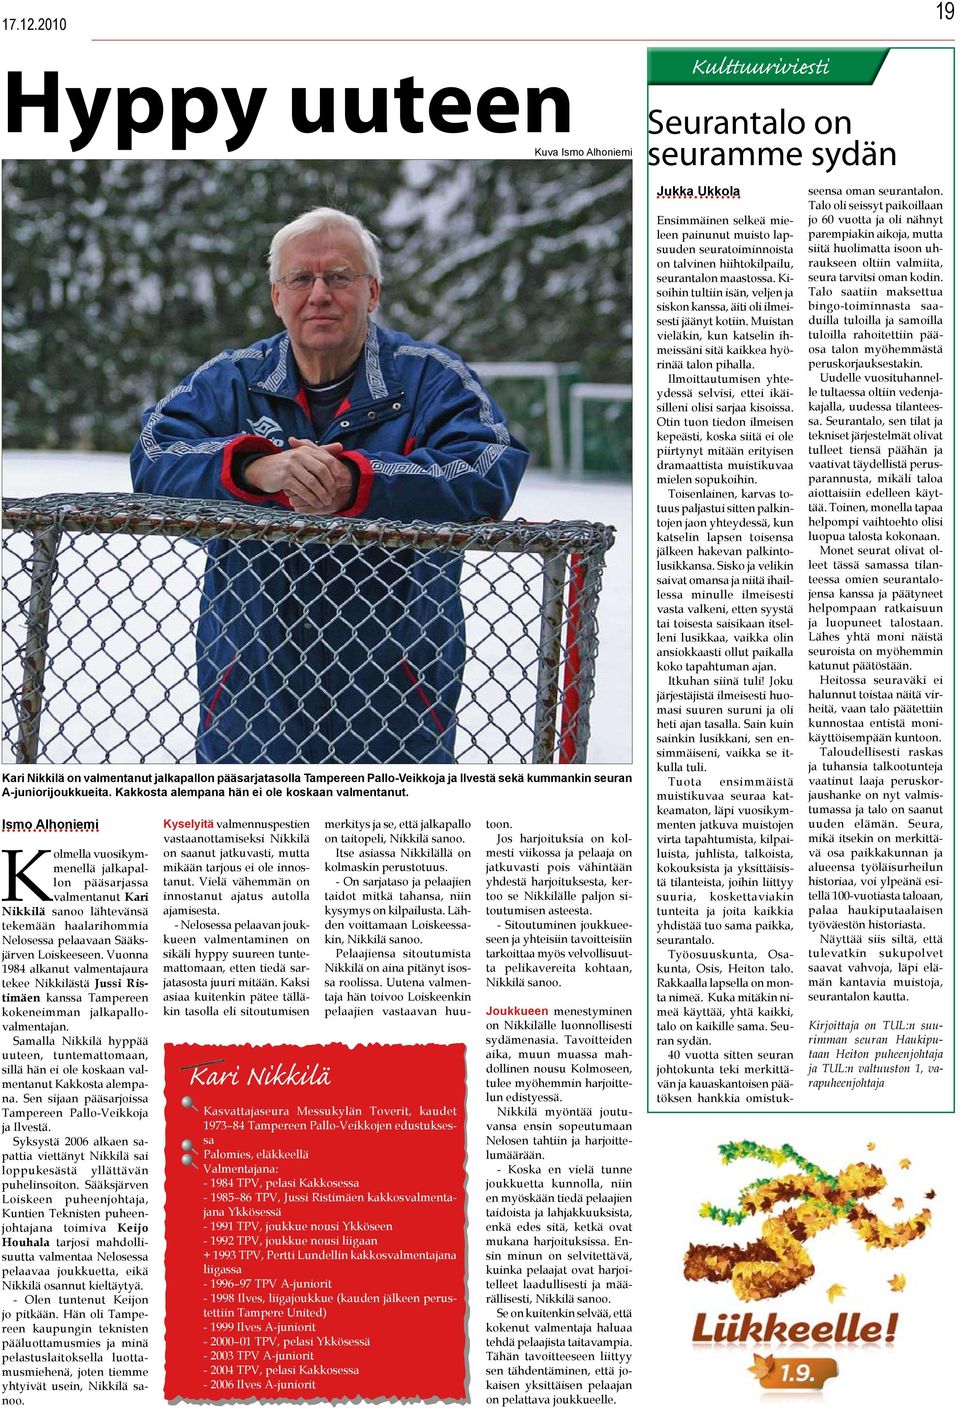 Kolmella vuosikymmenellä jalkapallon pääsarjassa valmentanut Kari Nikkilä sanoo lähtevänsä tekemään haalarihommia Nelosessa pelaavaan Sääksjärven Loiskeeseen.